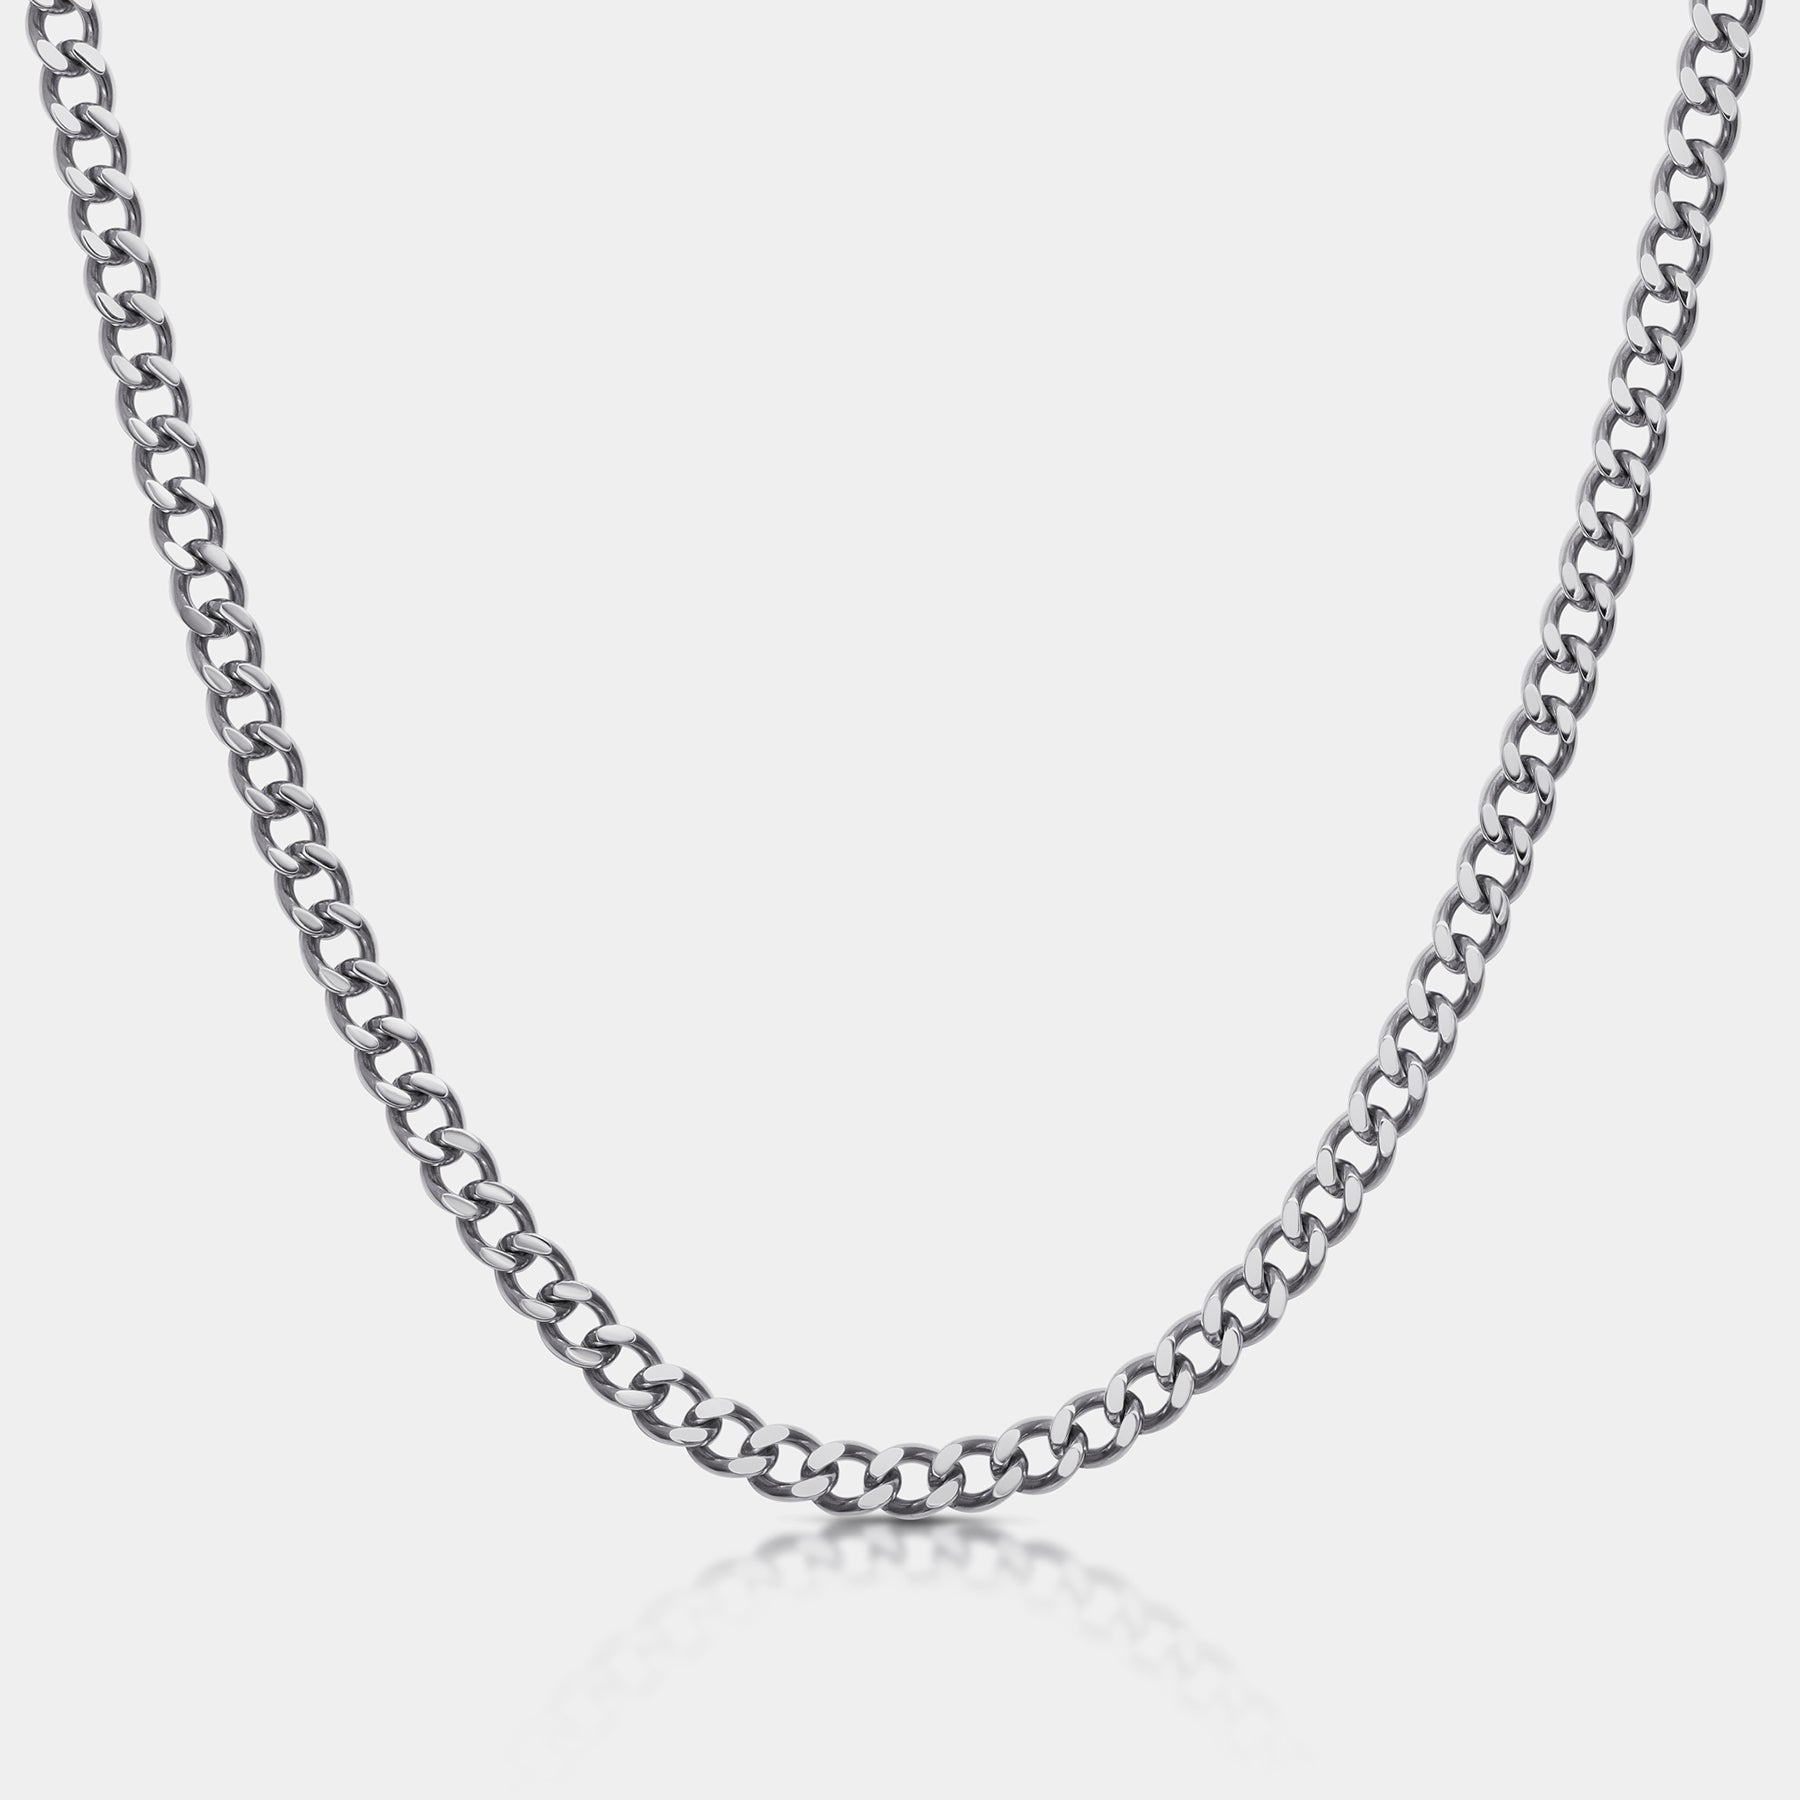 Cuban Chain Necklace Silver(6mm) - Elegatto